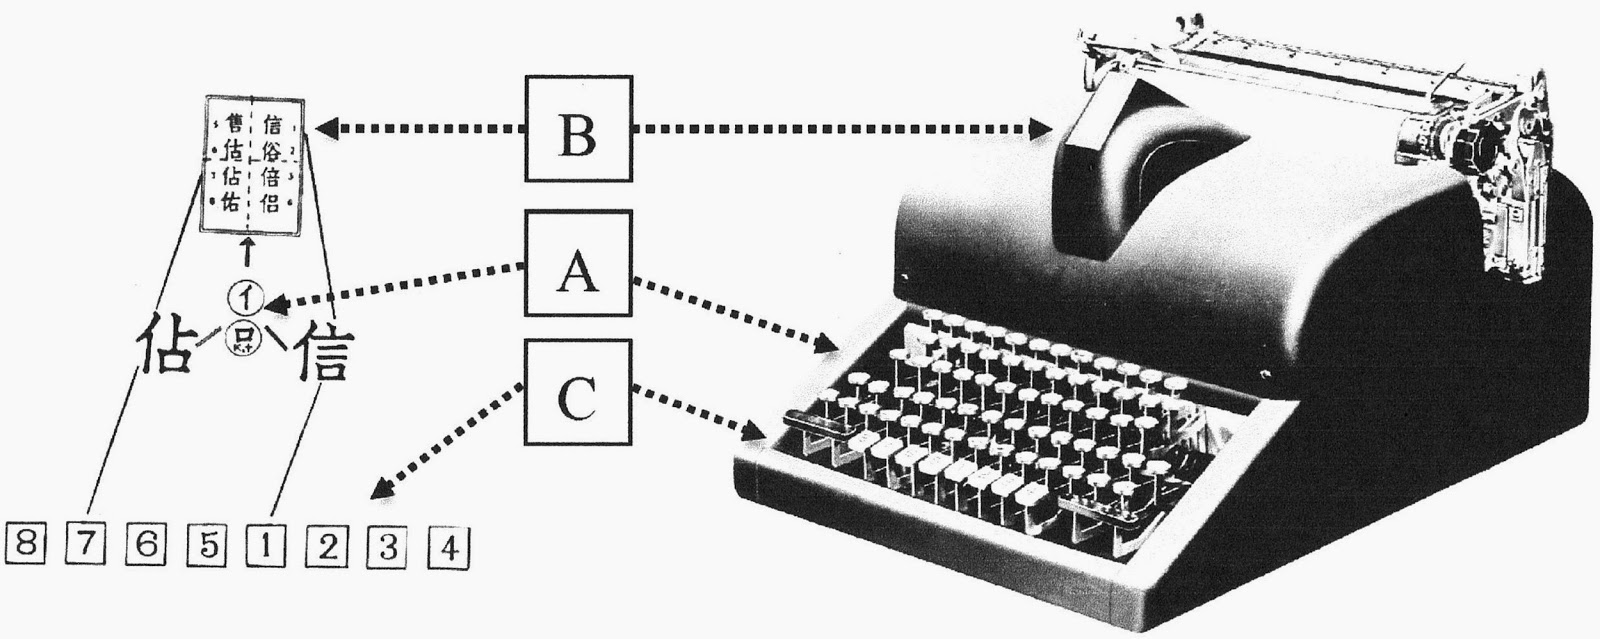 Китайская пишущая машинка — анекдот, инженерный шедевр, символ - 26